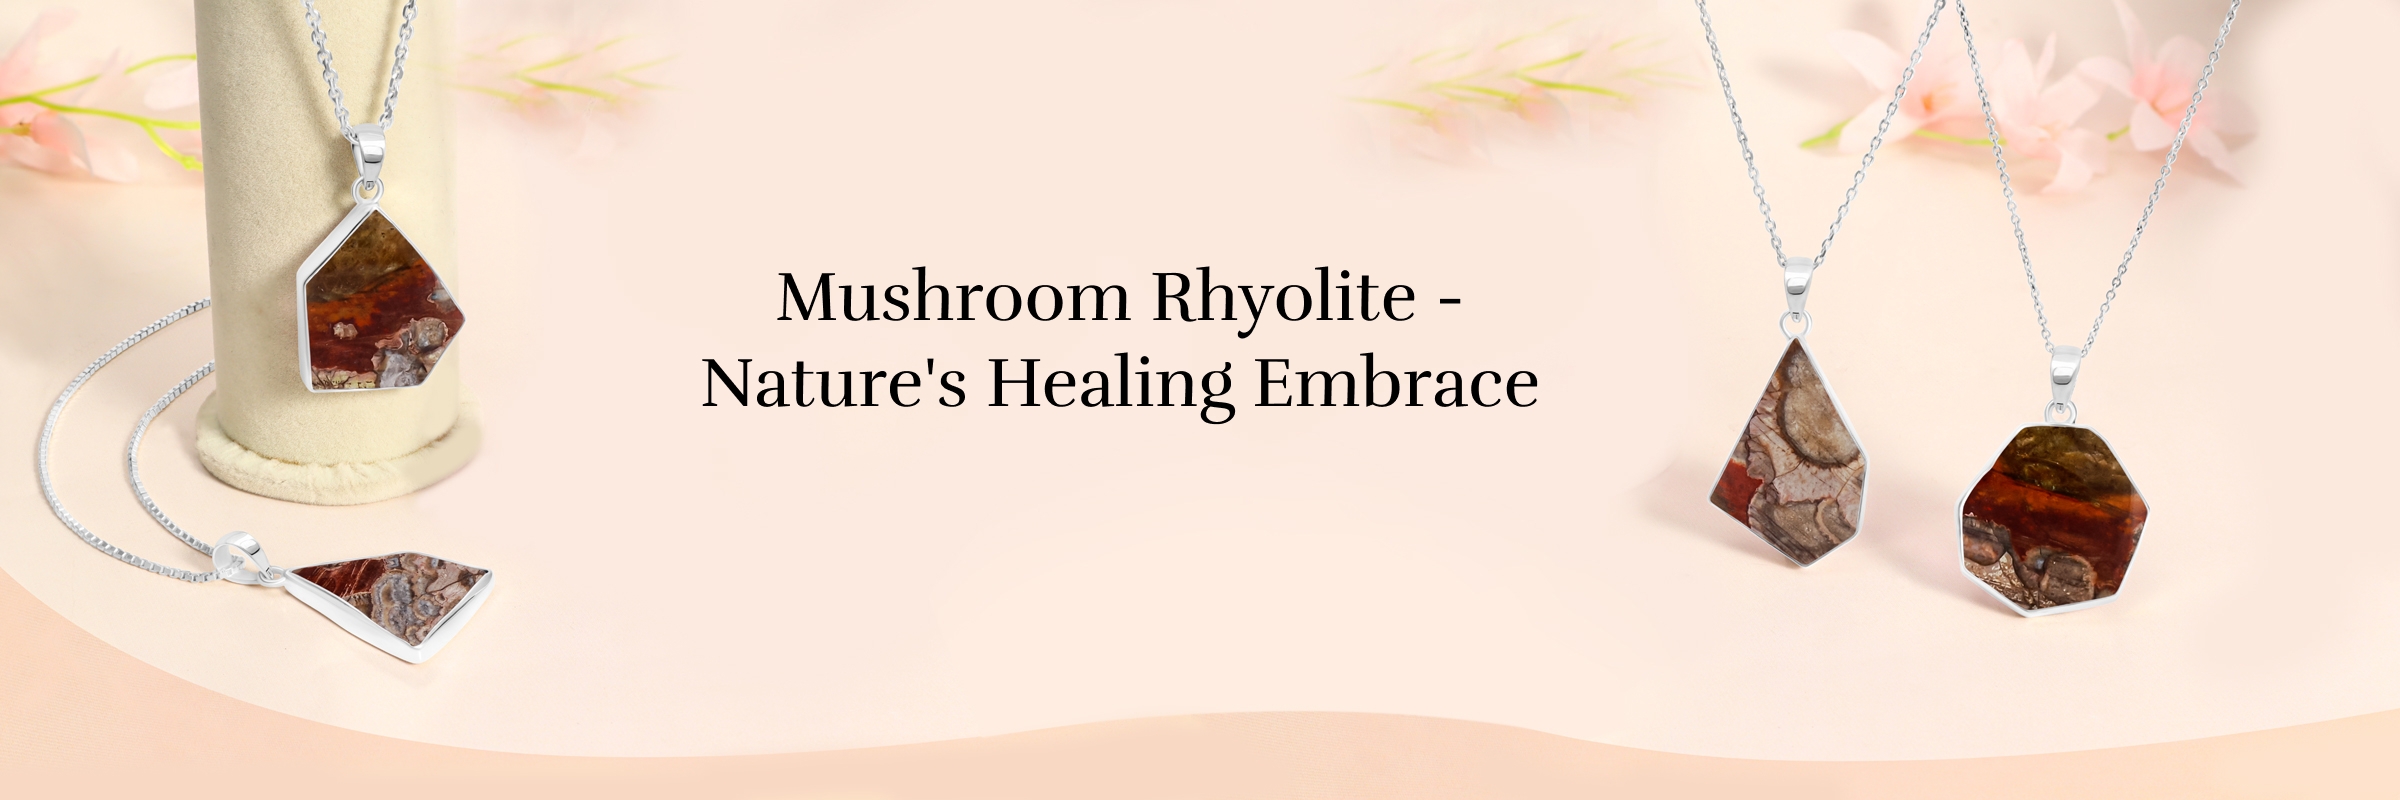 Mushroom Rhyolite: Physical Healing properties